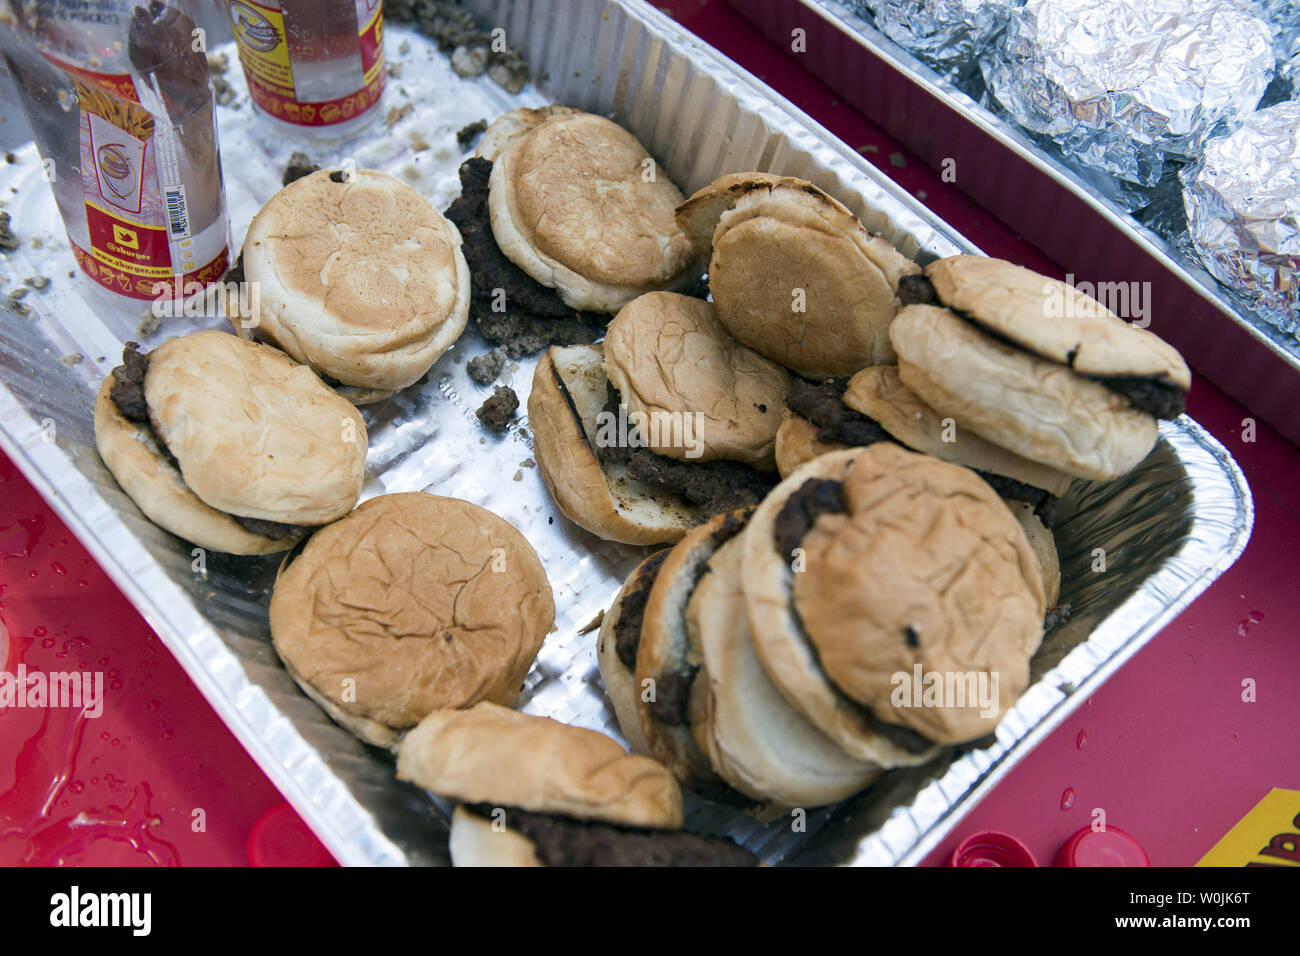 Uneaten hamburger sono visibili dopo la Z-Burger 8 Indipendenza annuale Burger mangiare campionato, a Washington D.C. il 3 luglio 2017. Molly Schuyler ha vinto il concorso di quest'anno 21 mangiare hamburger in dieci minuti. Foto di Kevin Dietsch/UPI Foto Stock